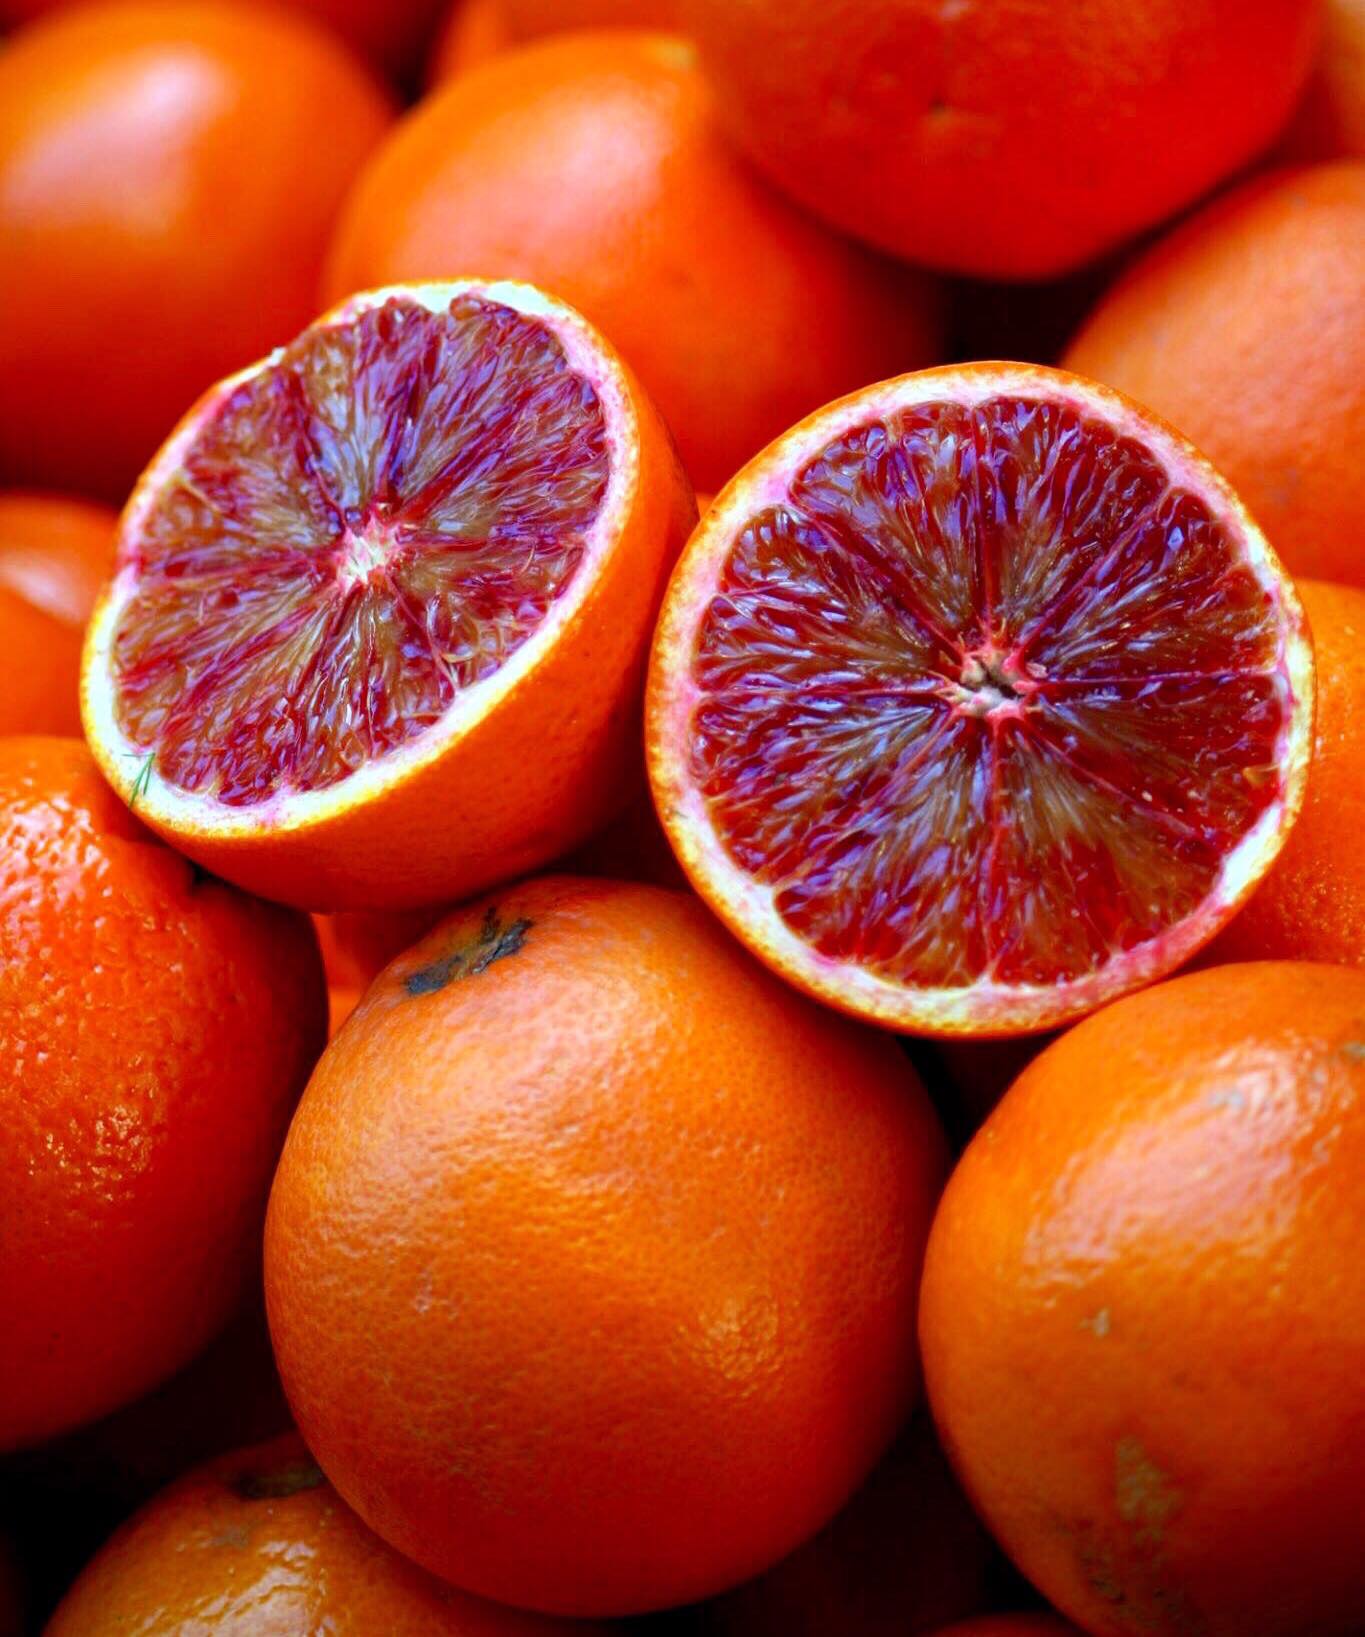 Sicilian red oranges - Visit Sicily